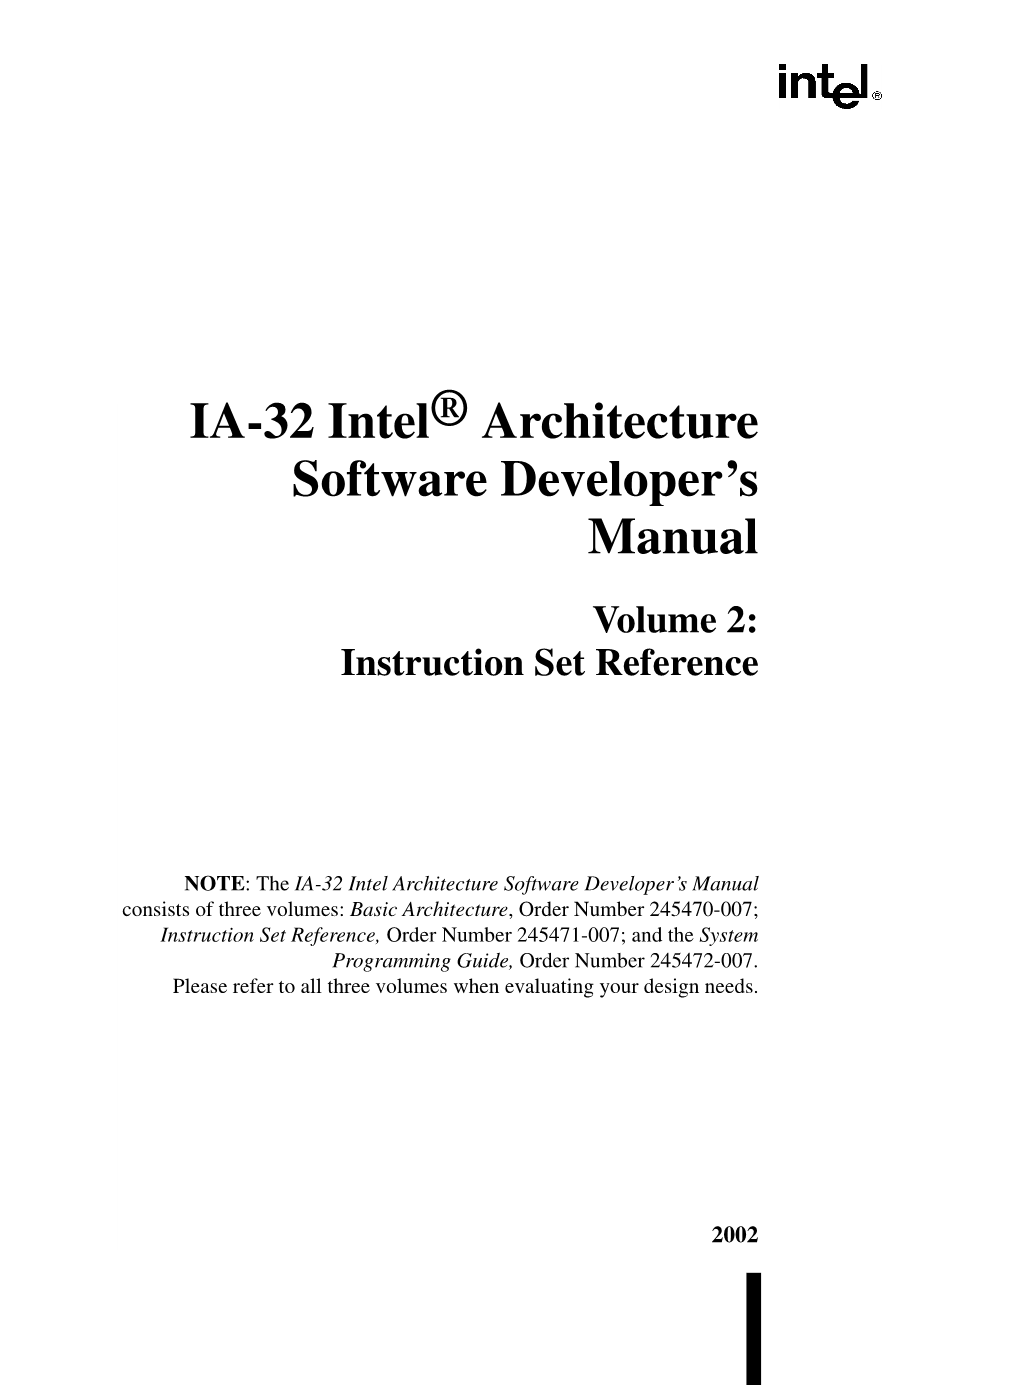 IA-32 Intel Architecture Software Developer's Manual